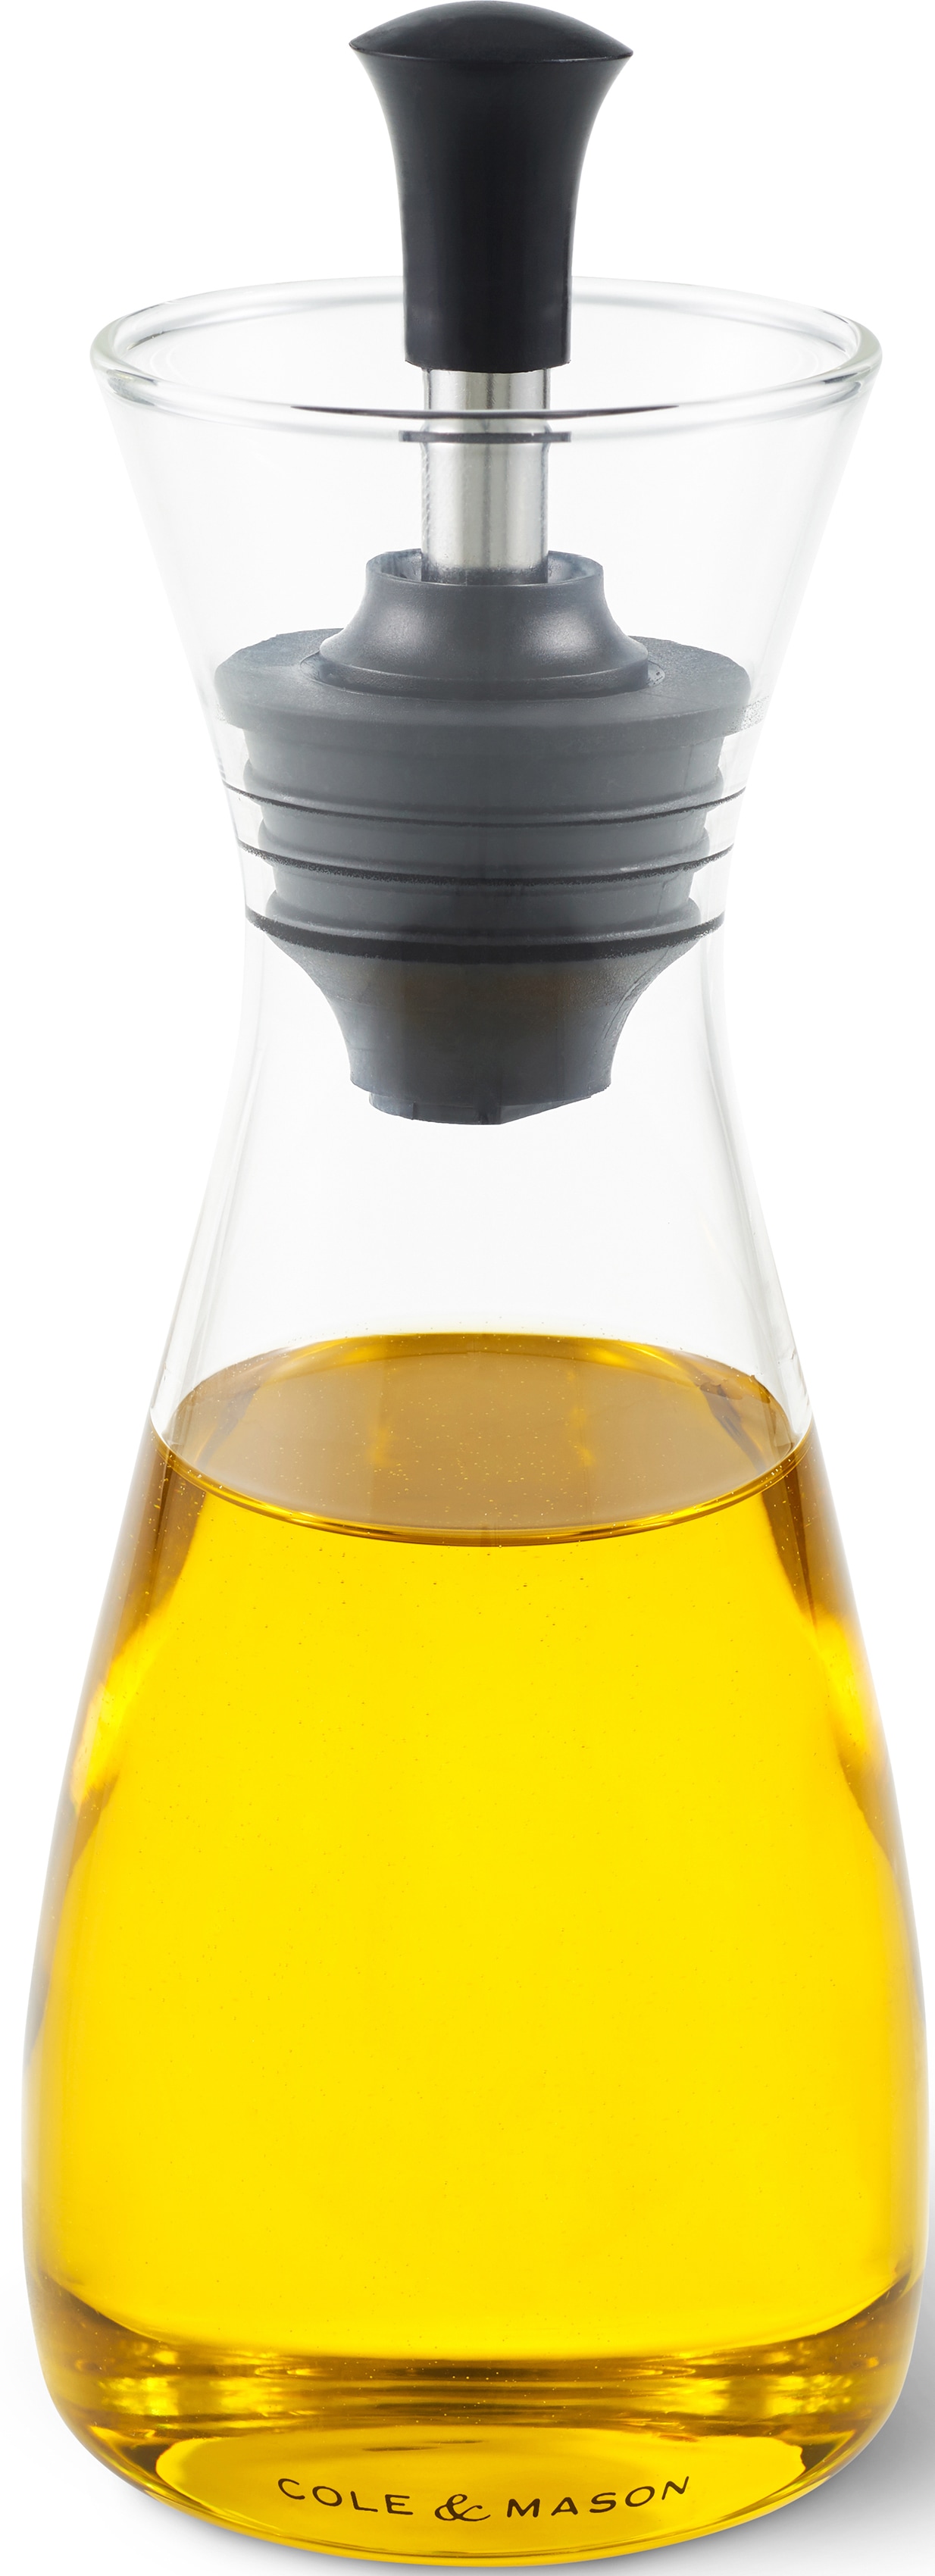 Cole & Mason H103018 Ölflasche / Essigflasche mit Silikon-Verschluss, für einfaches Dosieren und Verwahren. Höhe 21 cm